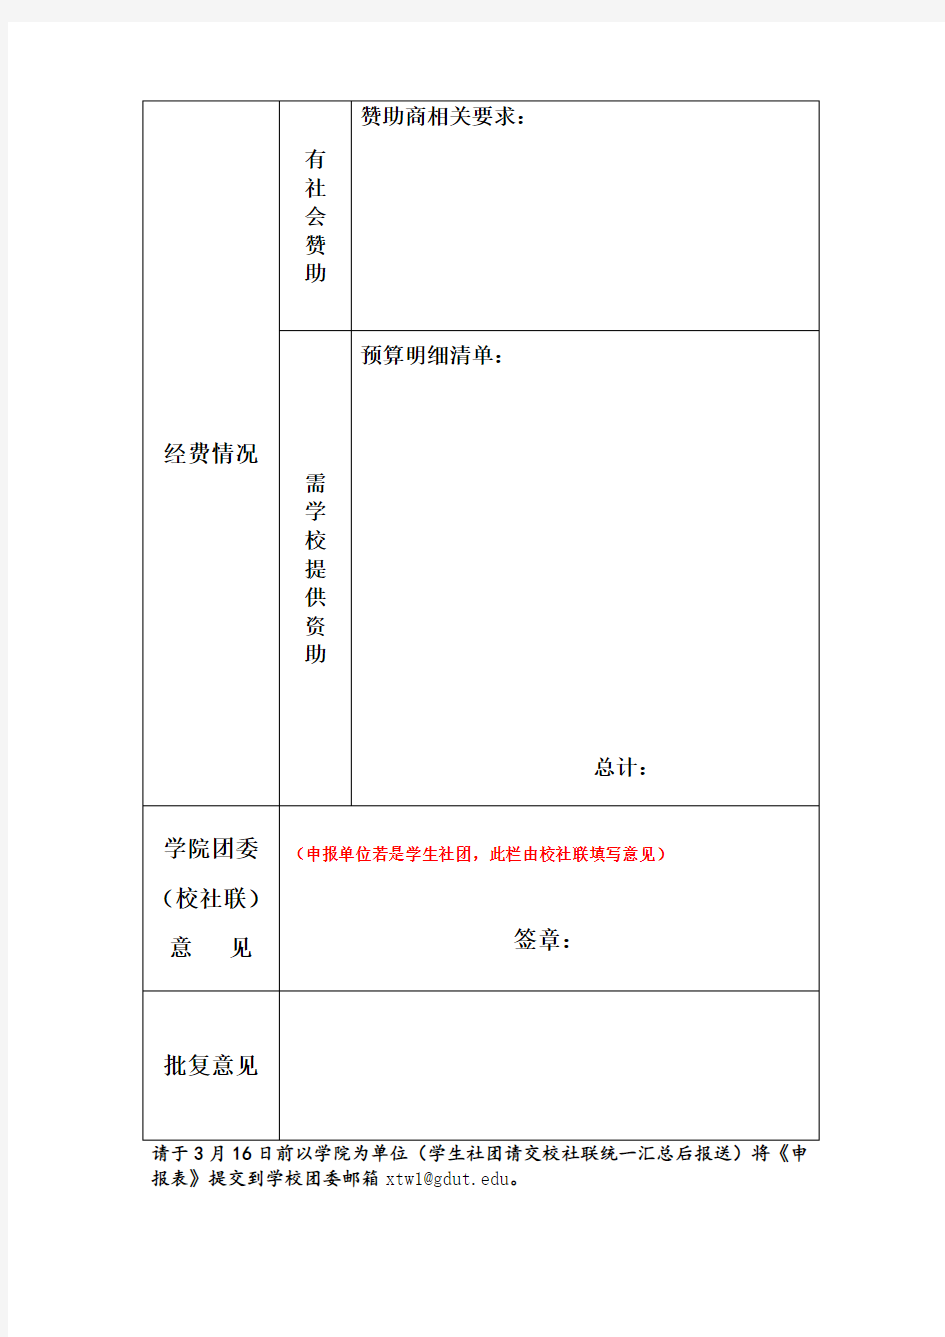 推荐-广东工业大学第十七届学生学术科技节项目申报表 